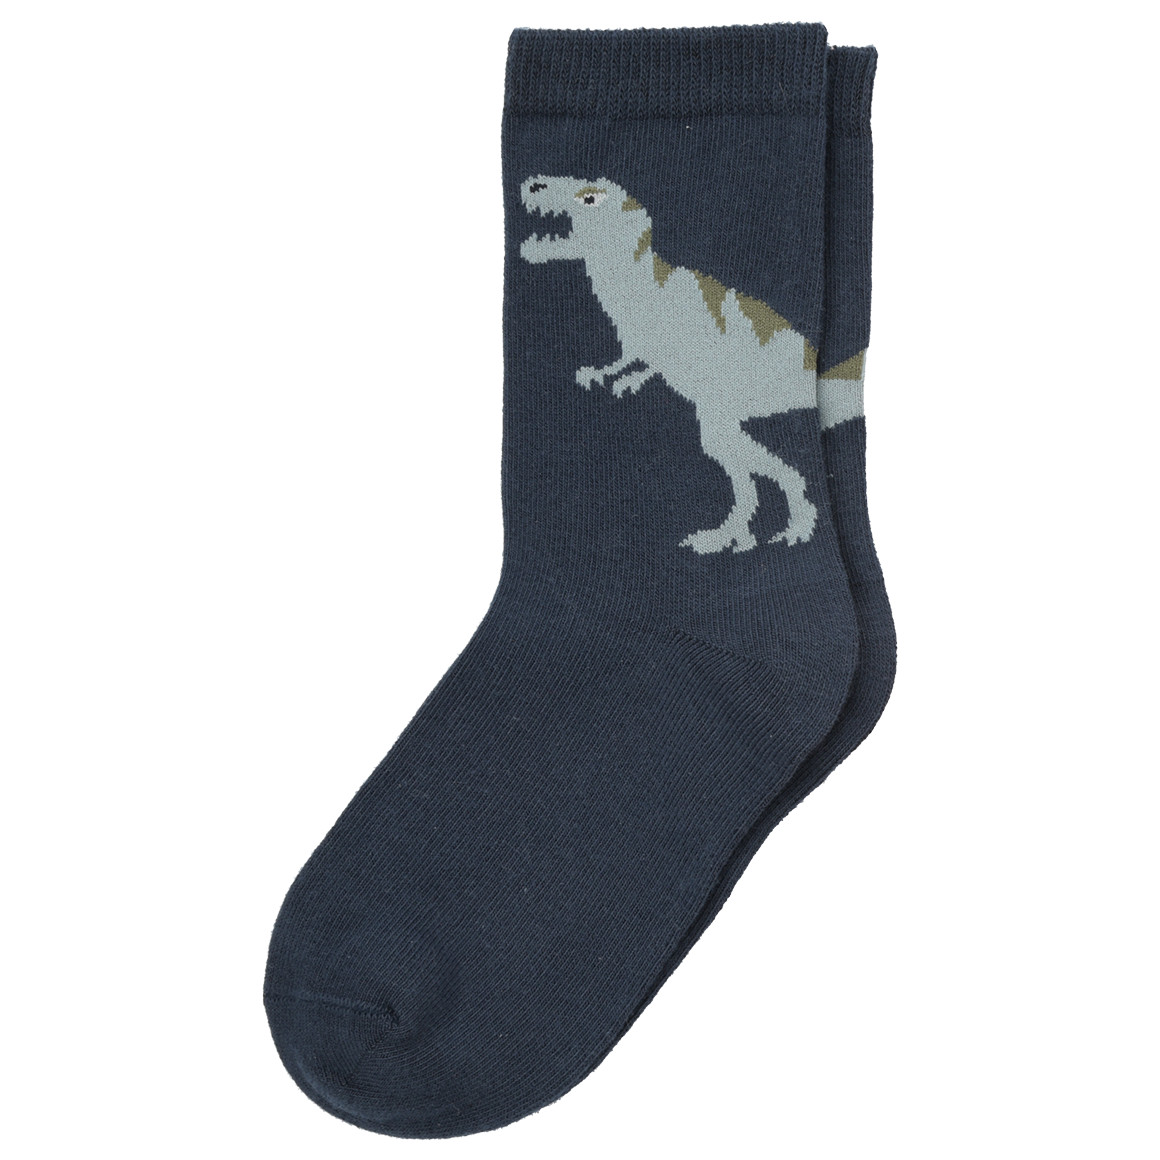 5 Paar Jungen Socken mit Dino-Allover | Ernsting\'s family